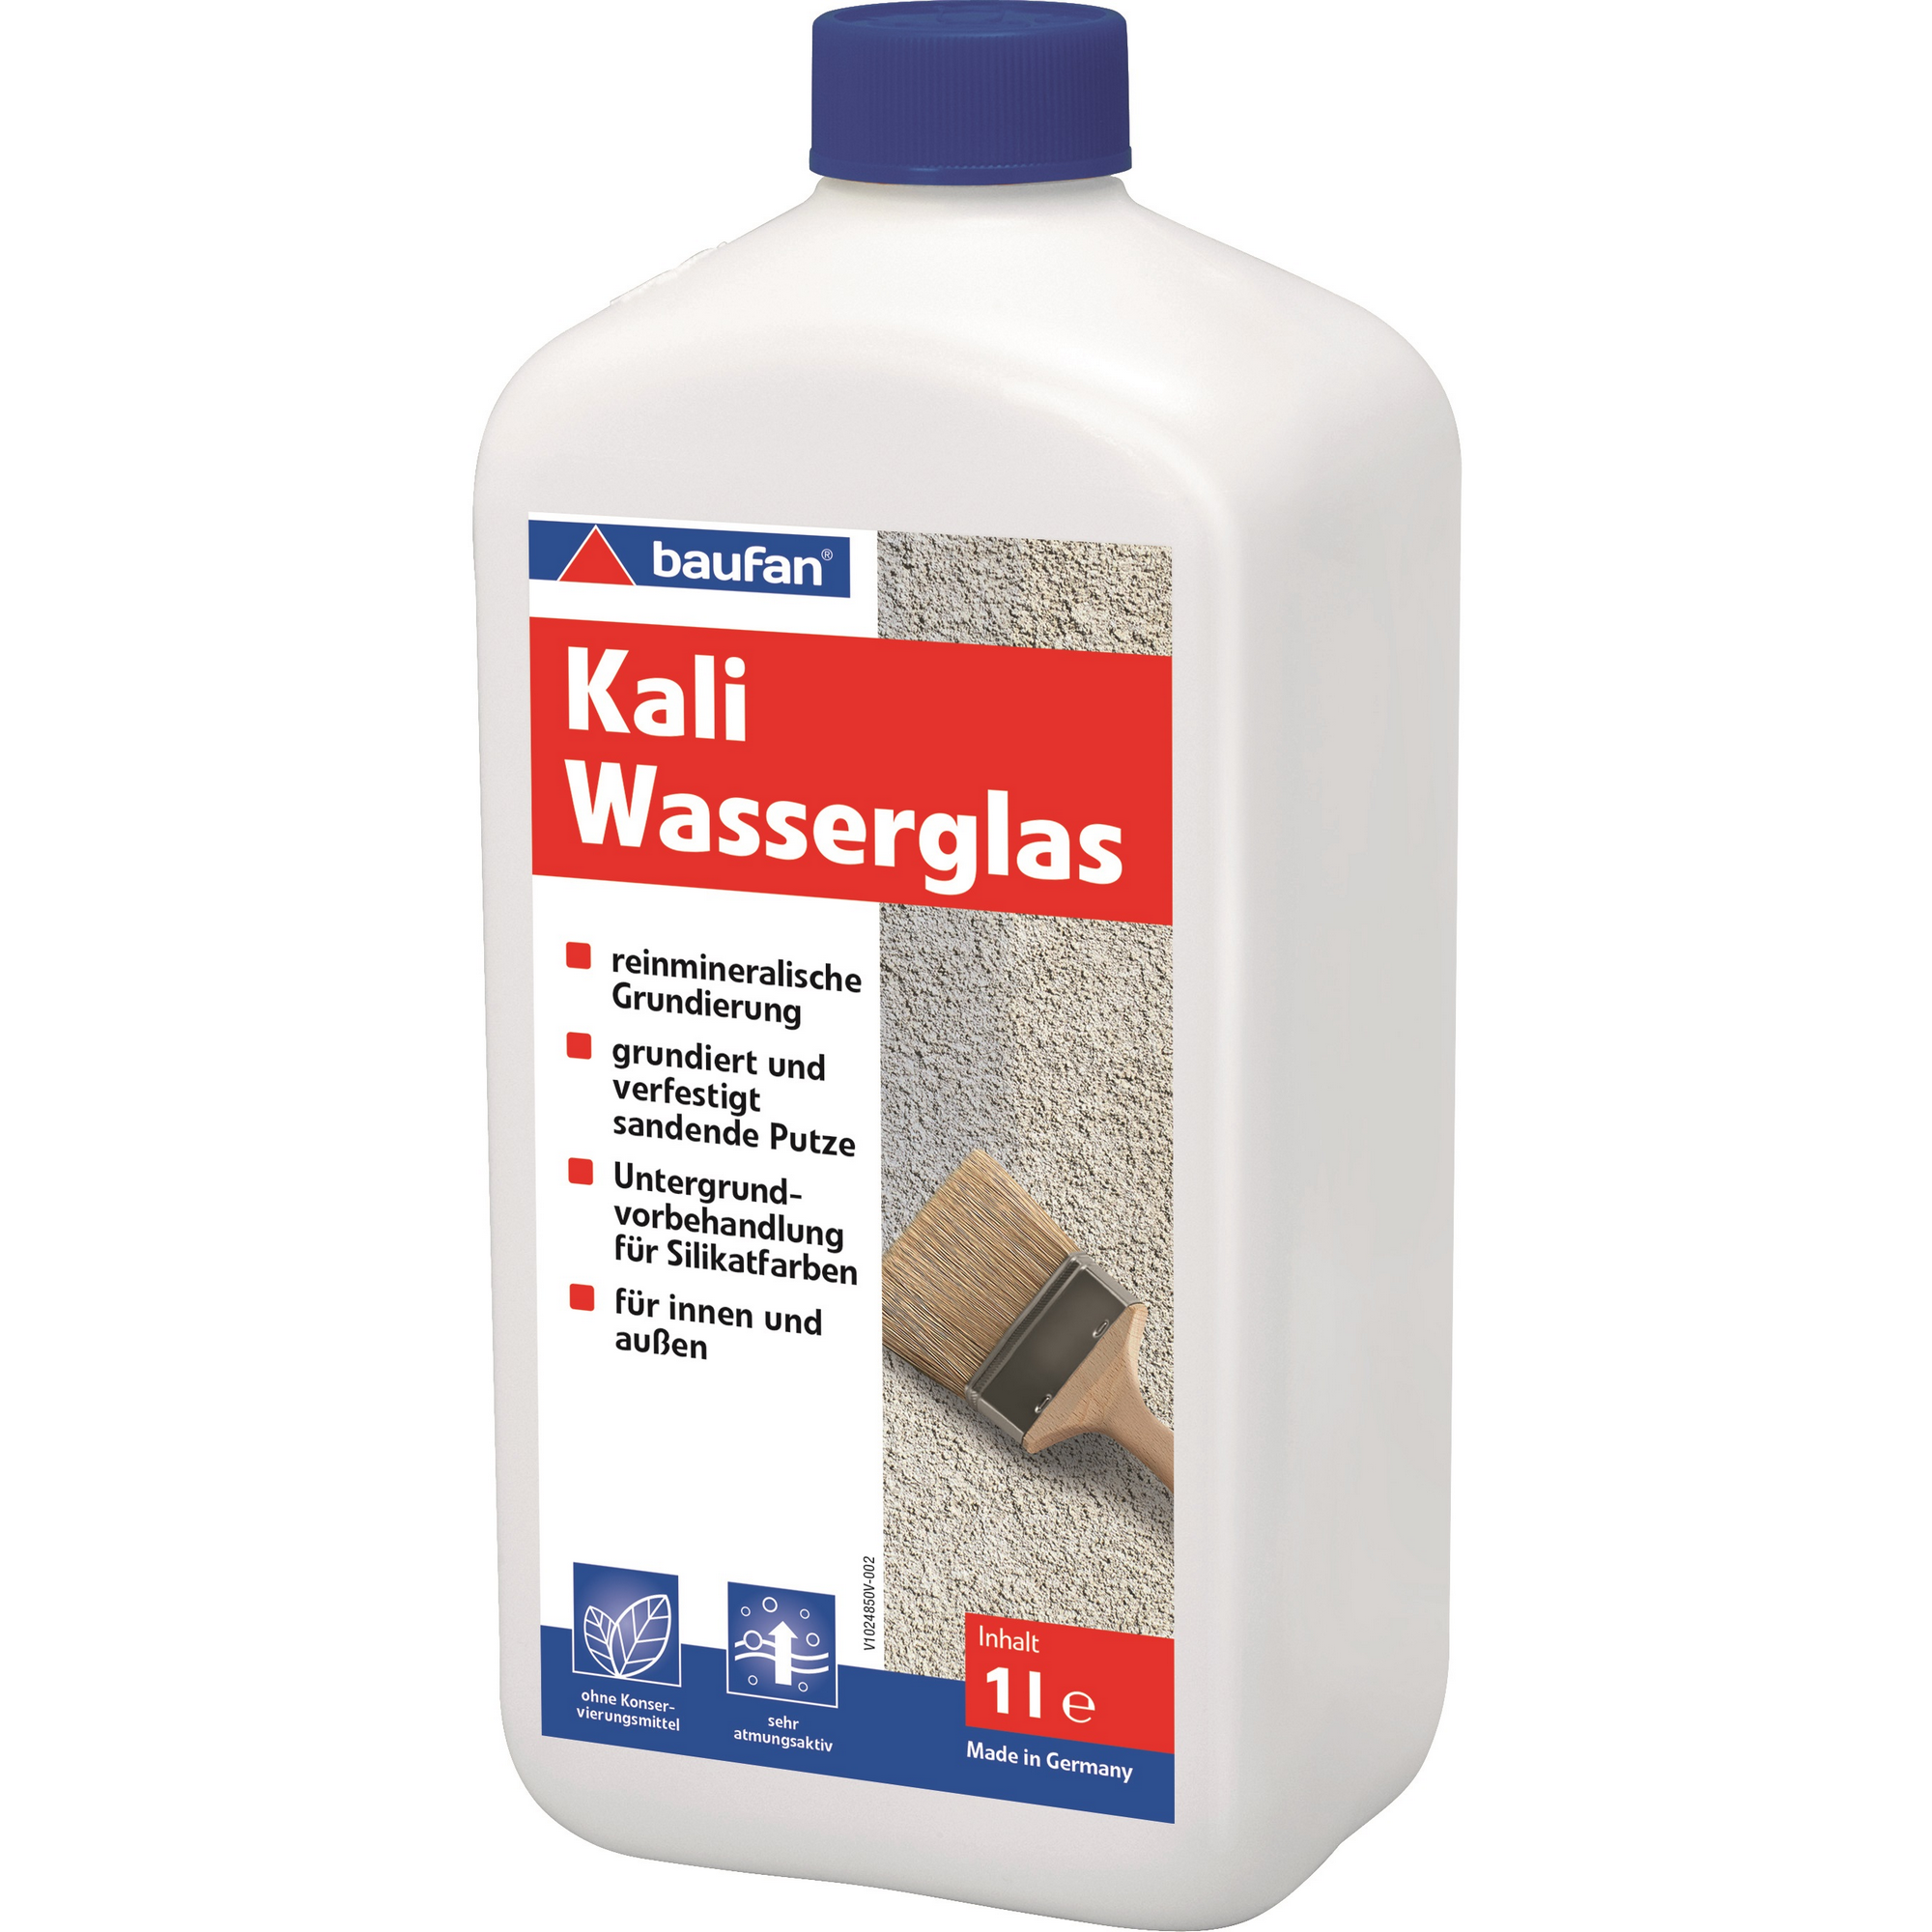 Kaliwasserglas 1 l + product picture